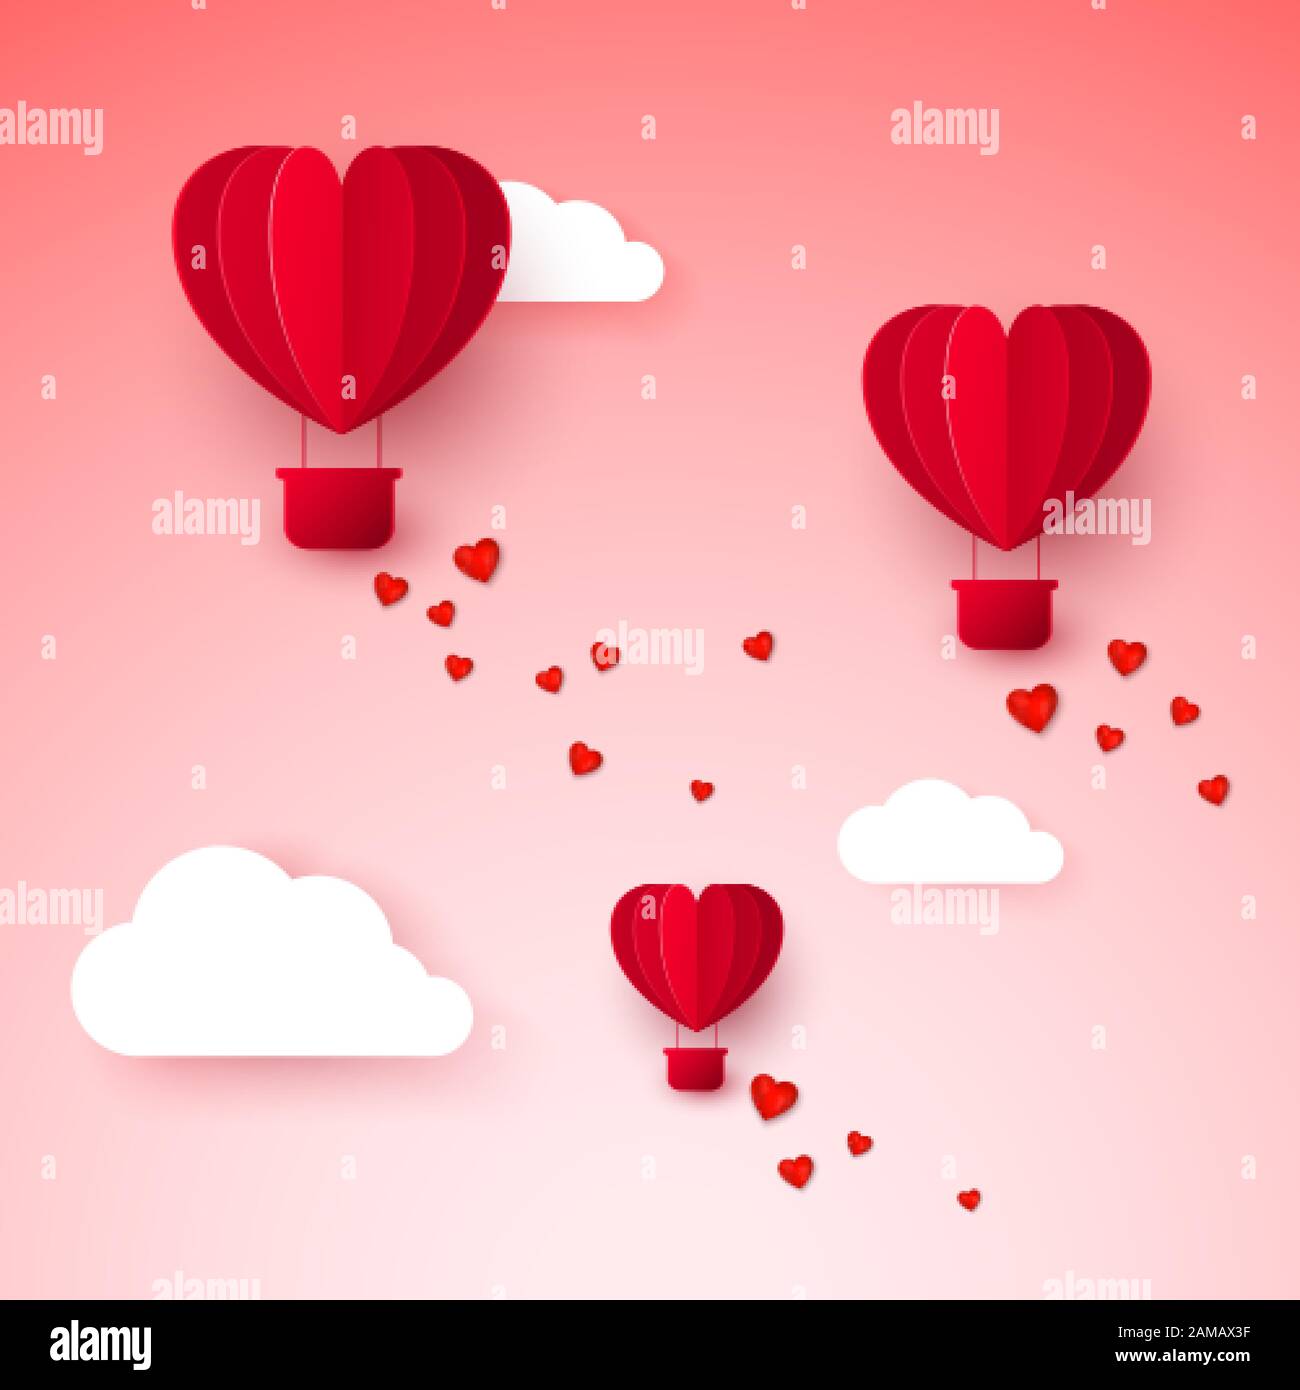 Valentinstag mit Papier geschnitten roter, herzförmiger Luftballon. Der Ballon fliegt und hinterlässt eine Spur mit Herzen auf rosa Hintergrund. Vektorgrafiken Stock Vektor